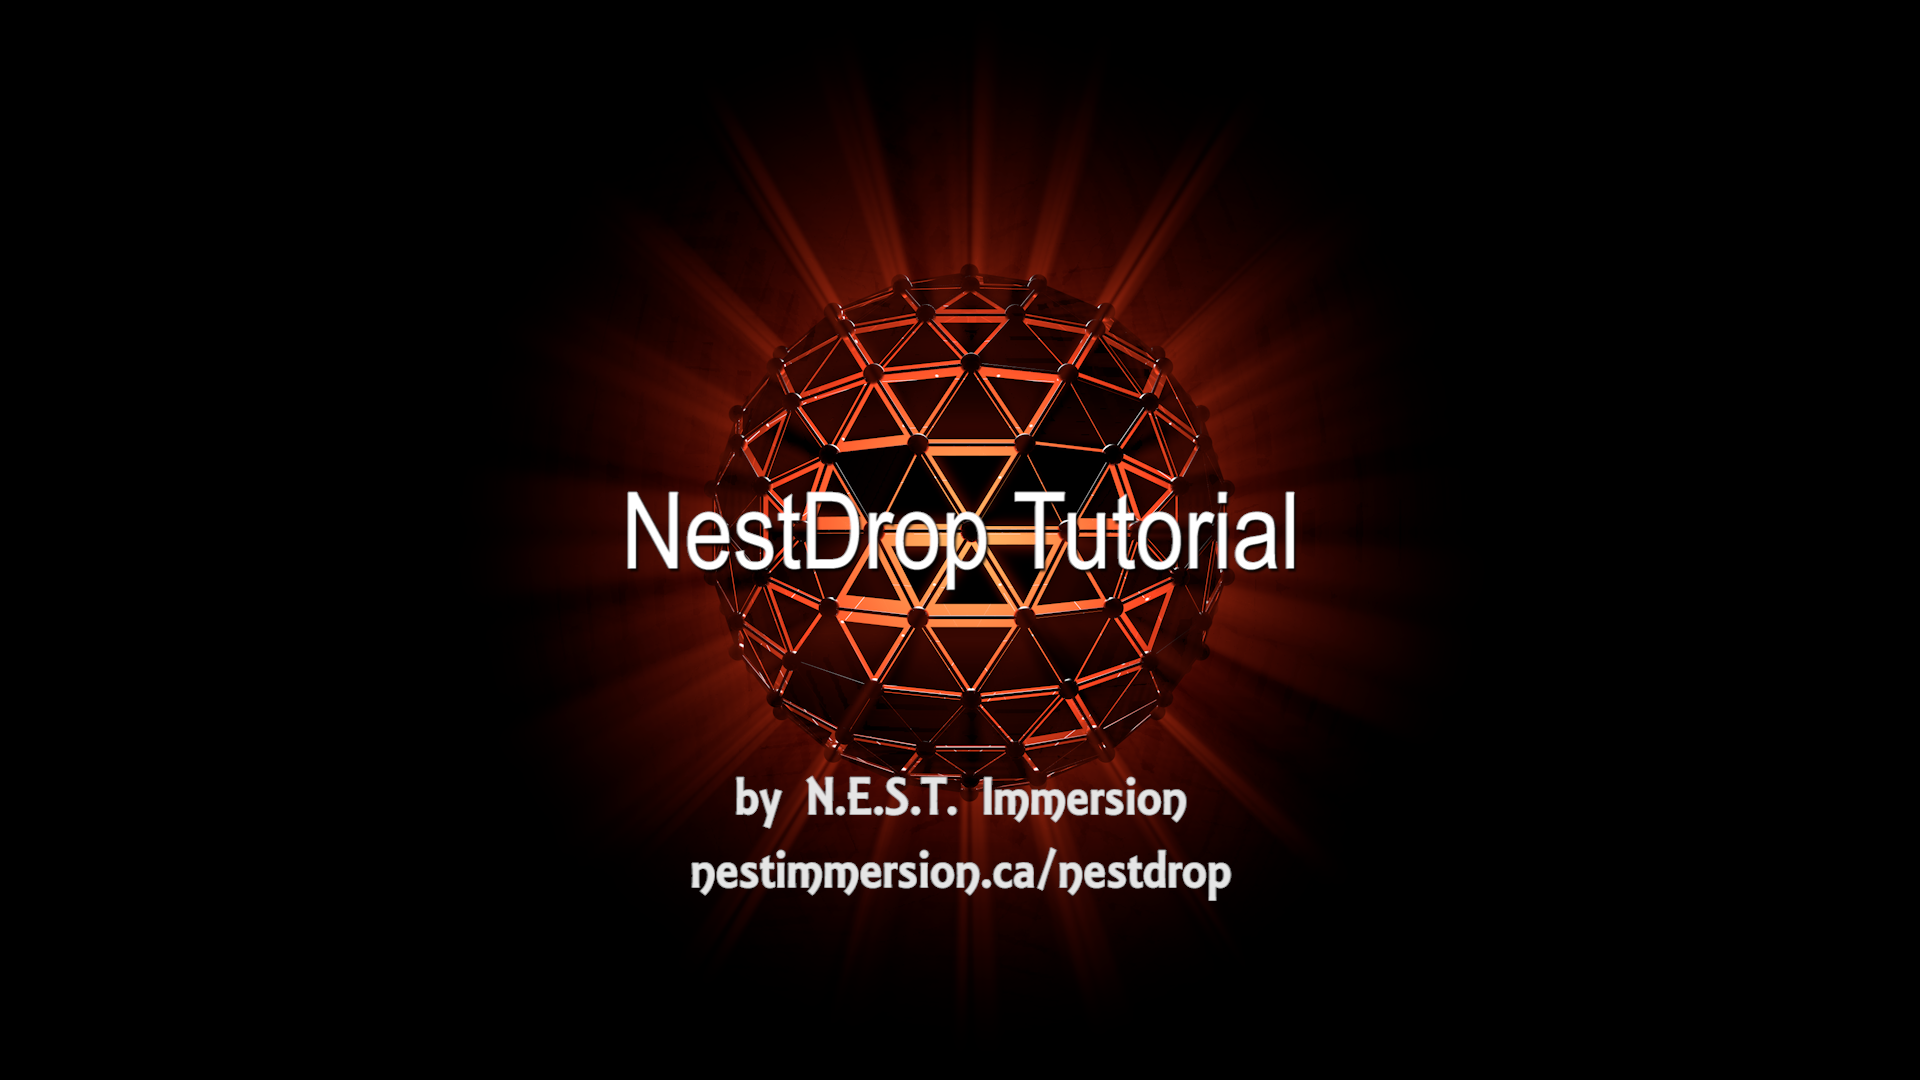 Nestdrop tutorial